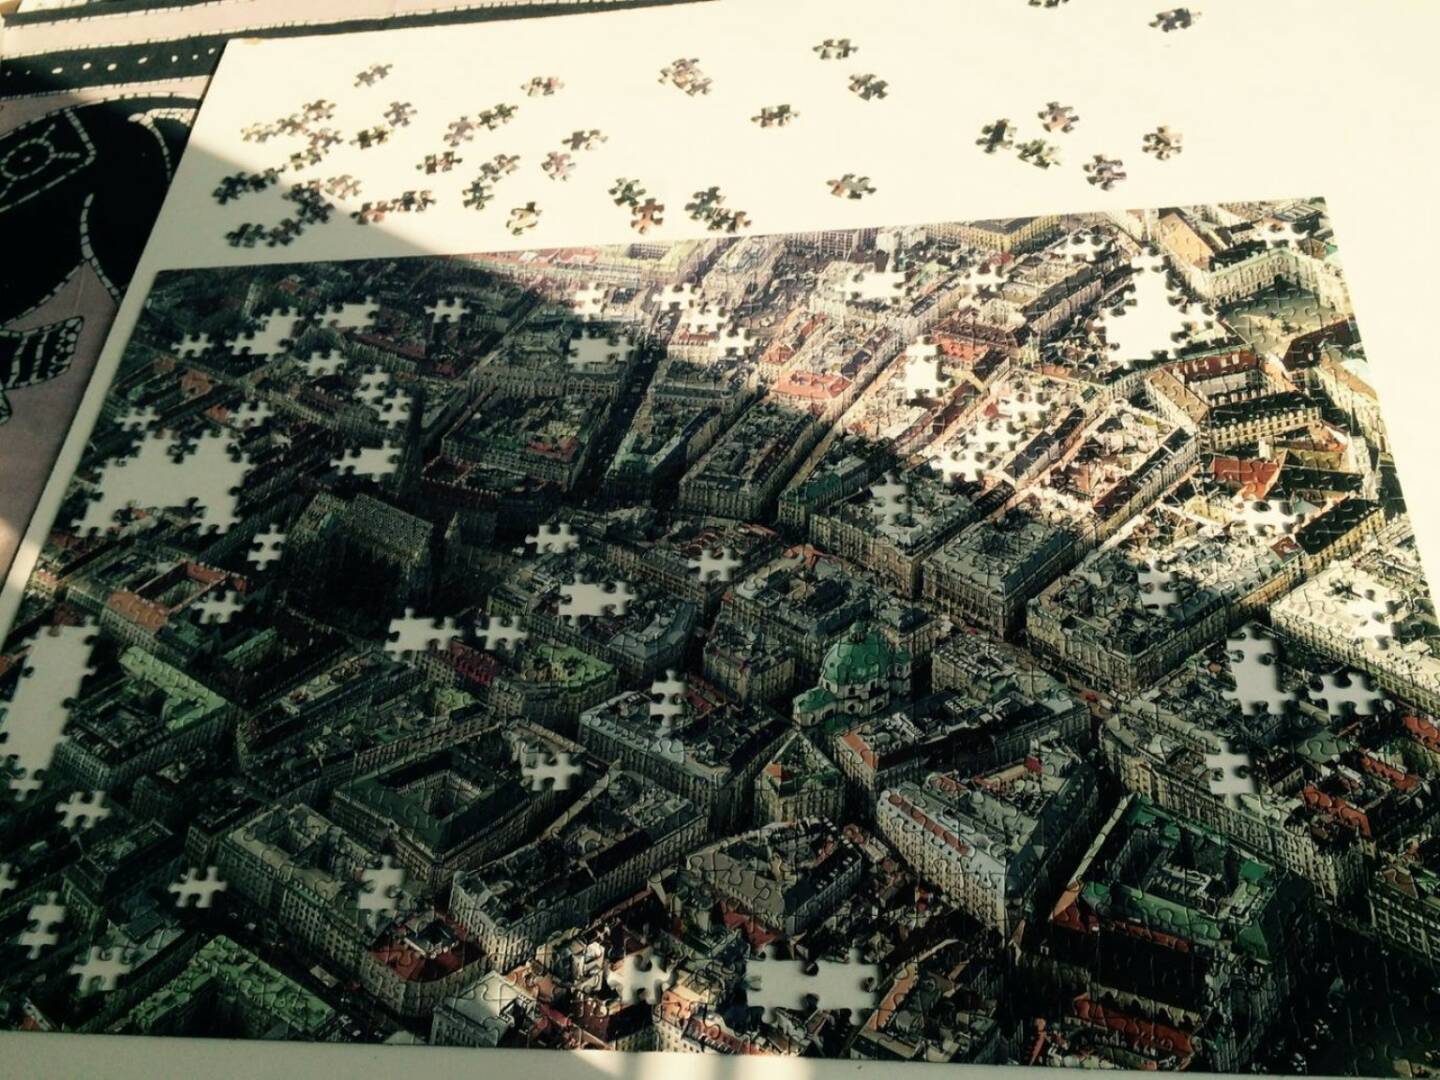 Wien Puzzle (by Alexandra Bolena)